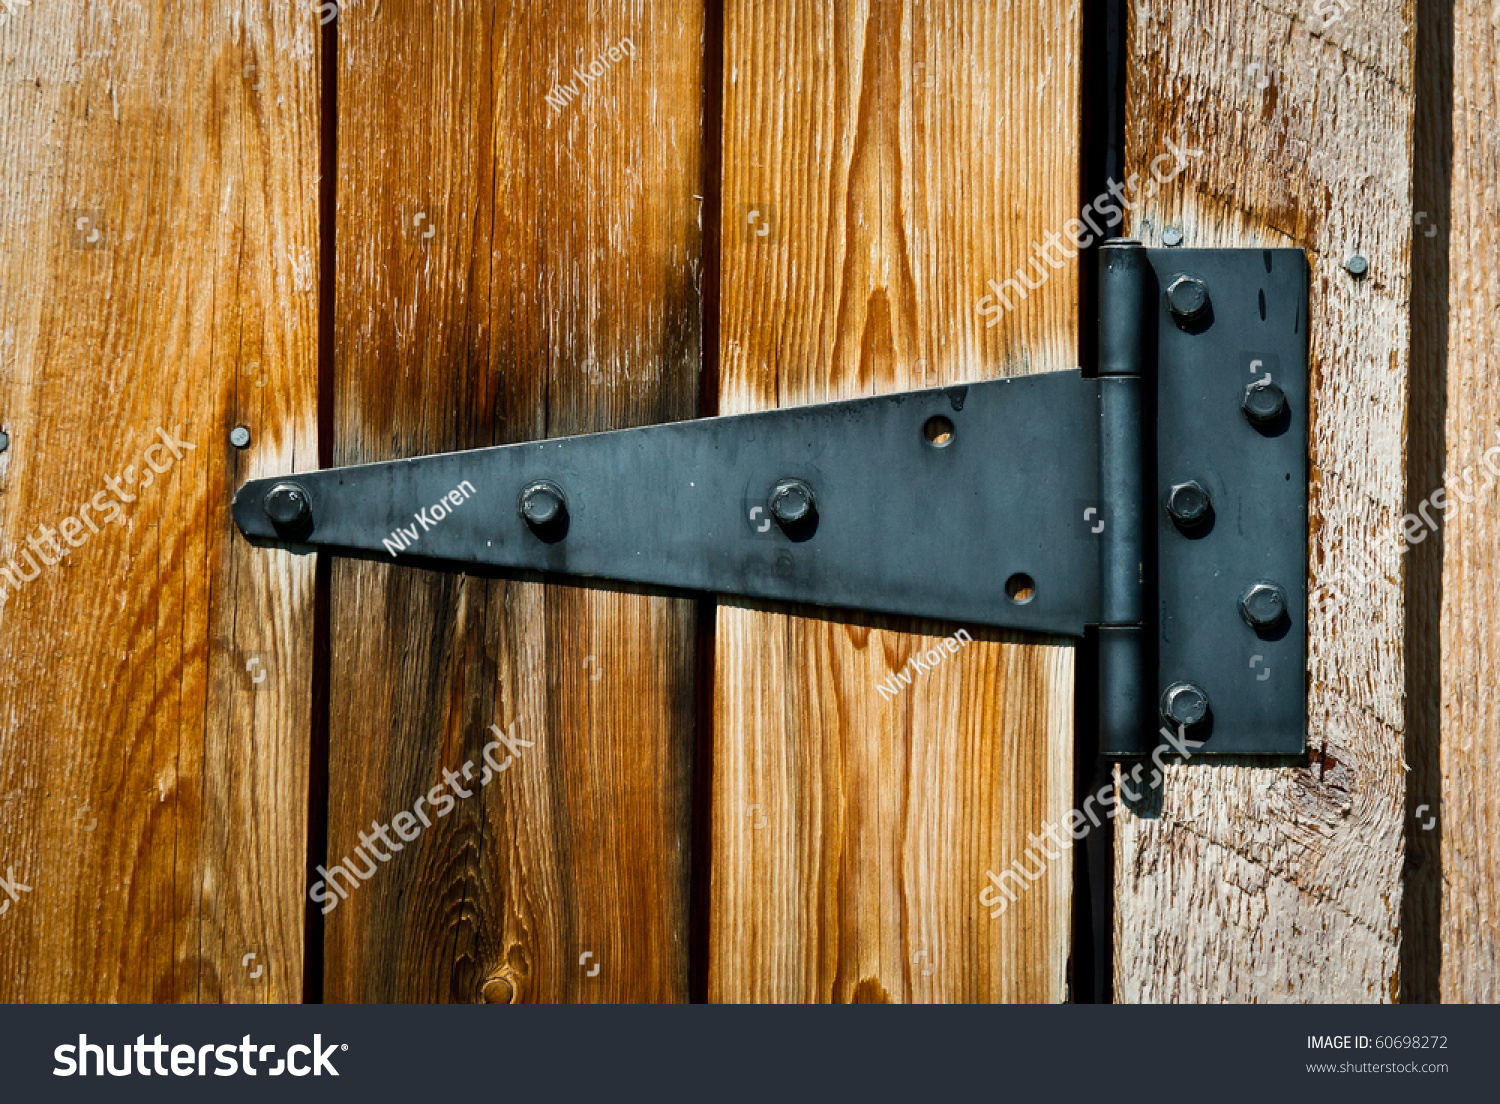 Stock Photo Old Rusty Hinge On Wooden Door 60698272 